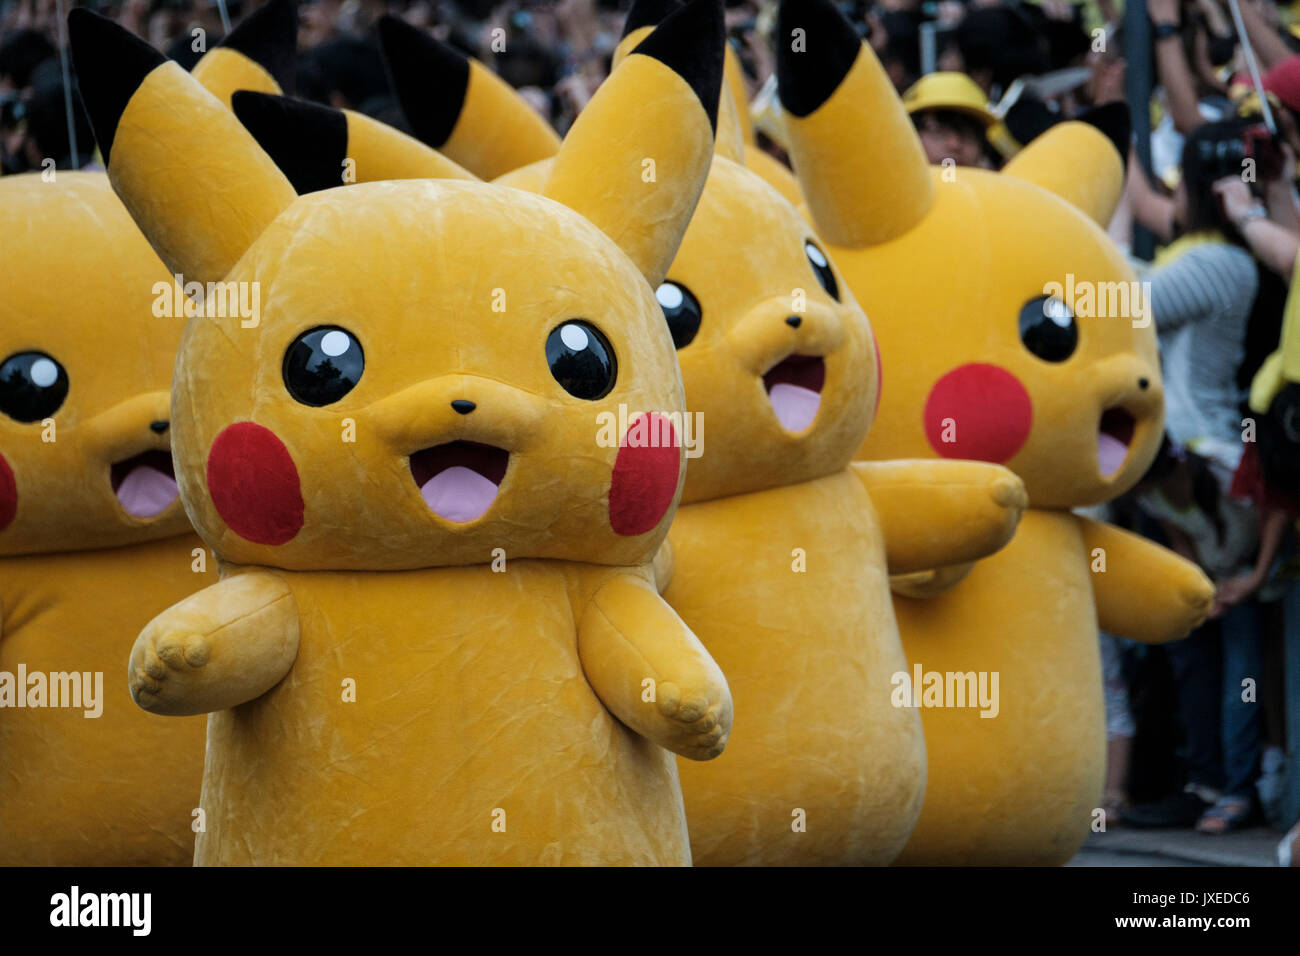 Carnevale pokemon immagini e fotografie stock ad alta risoluzione - Alamy